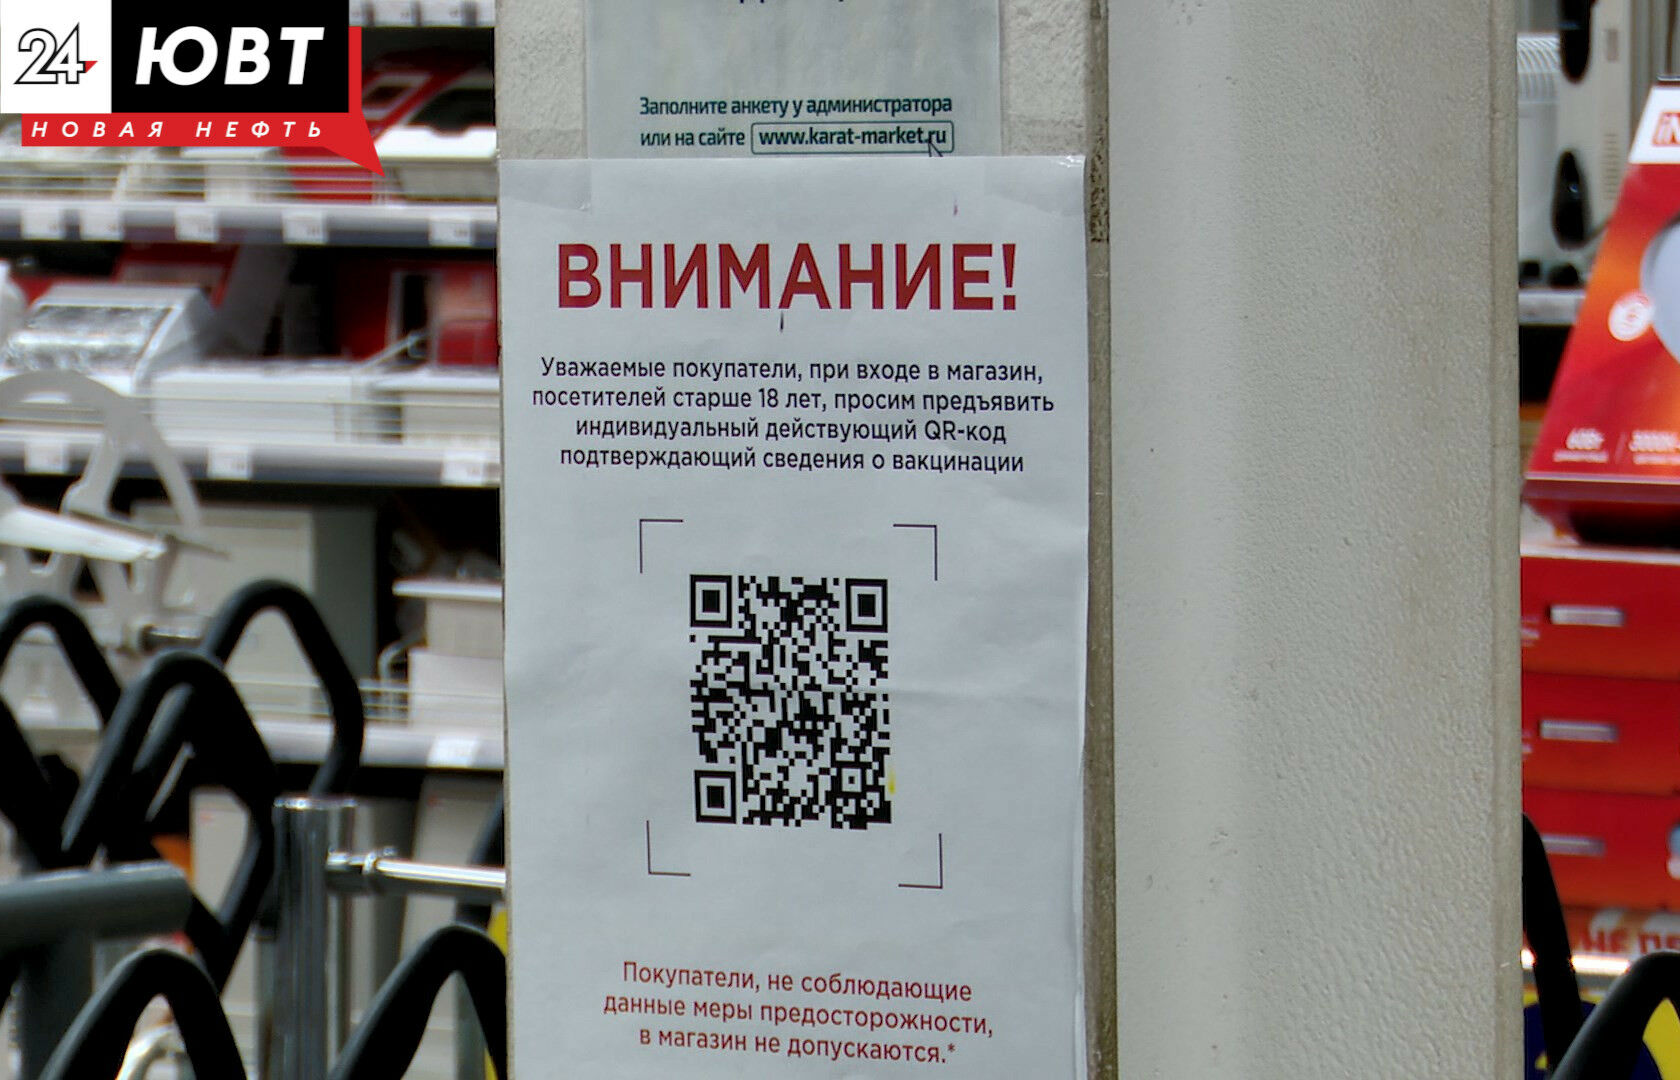 Предприниматели Татарстана могут получить гранты и льготные кредиты из-за коронавирусных ограничений